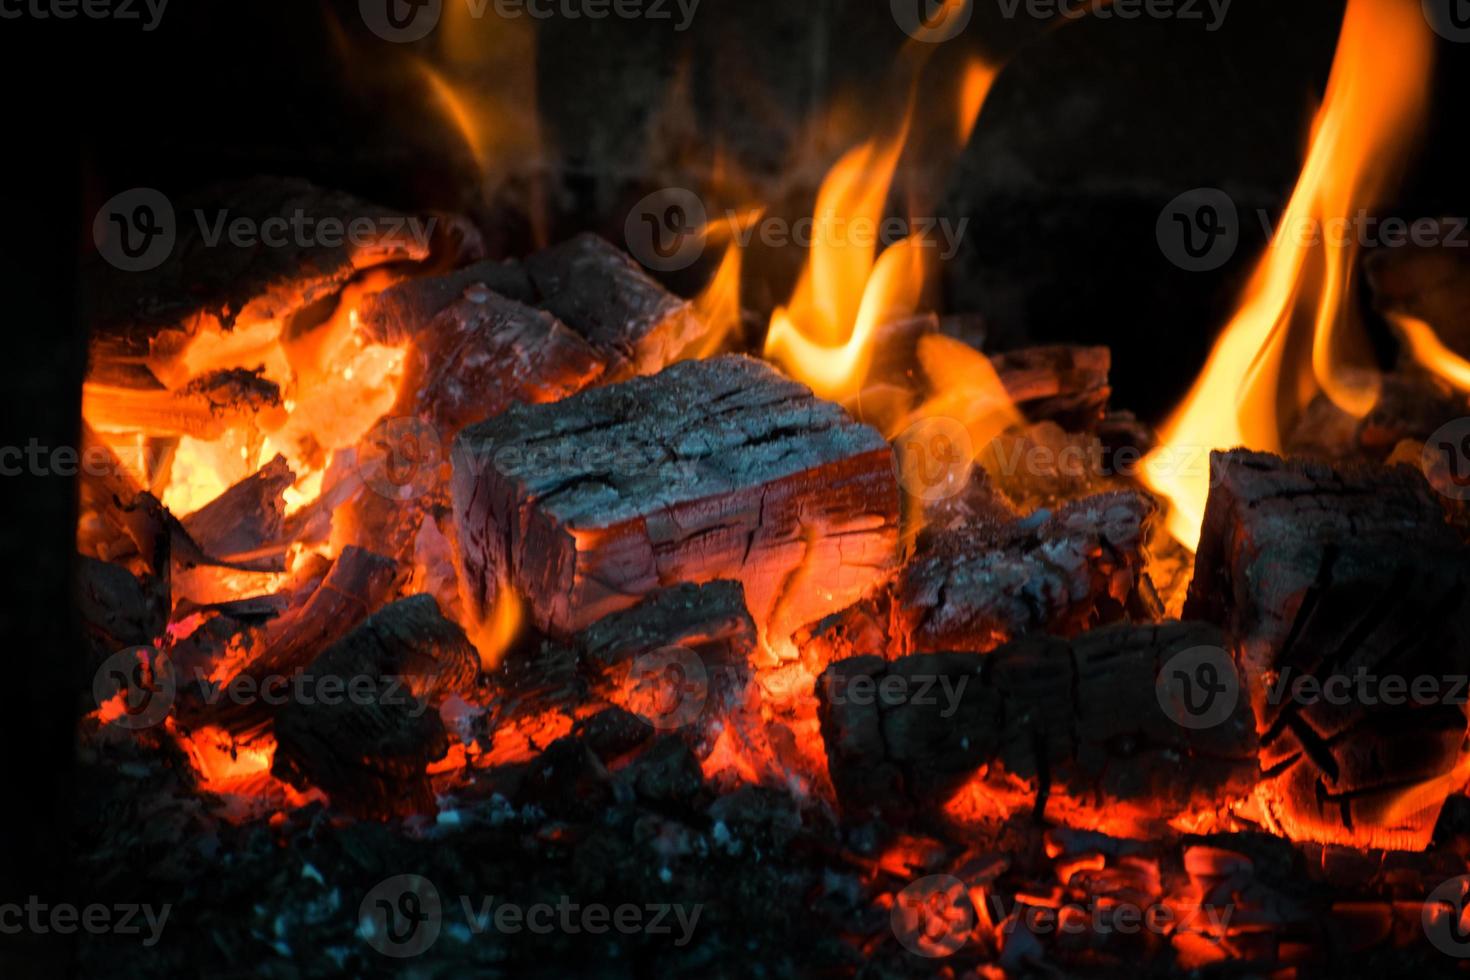 crista de chama na queima de madeira na lareira. queima de lenha em um fogão russo. foto